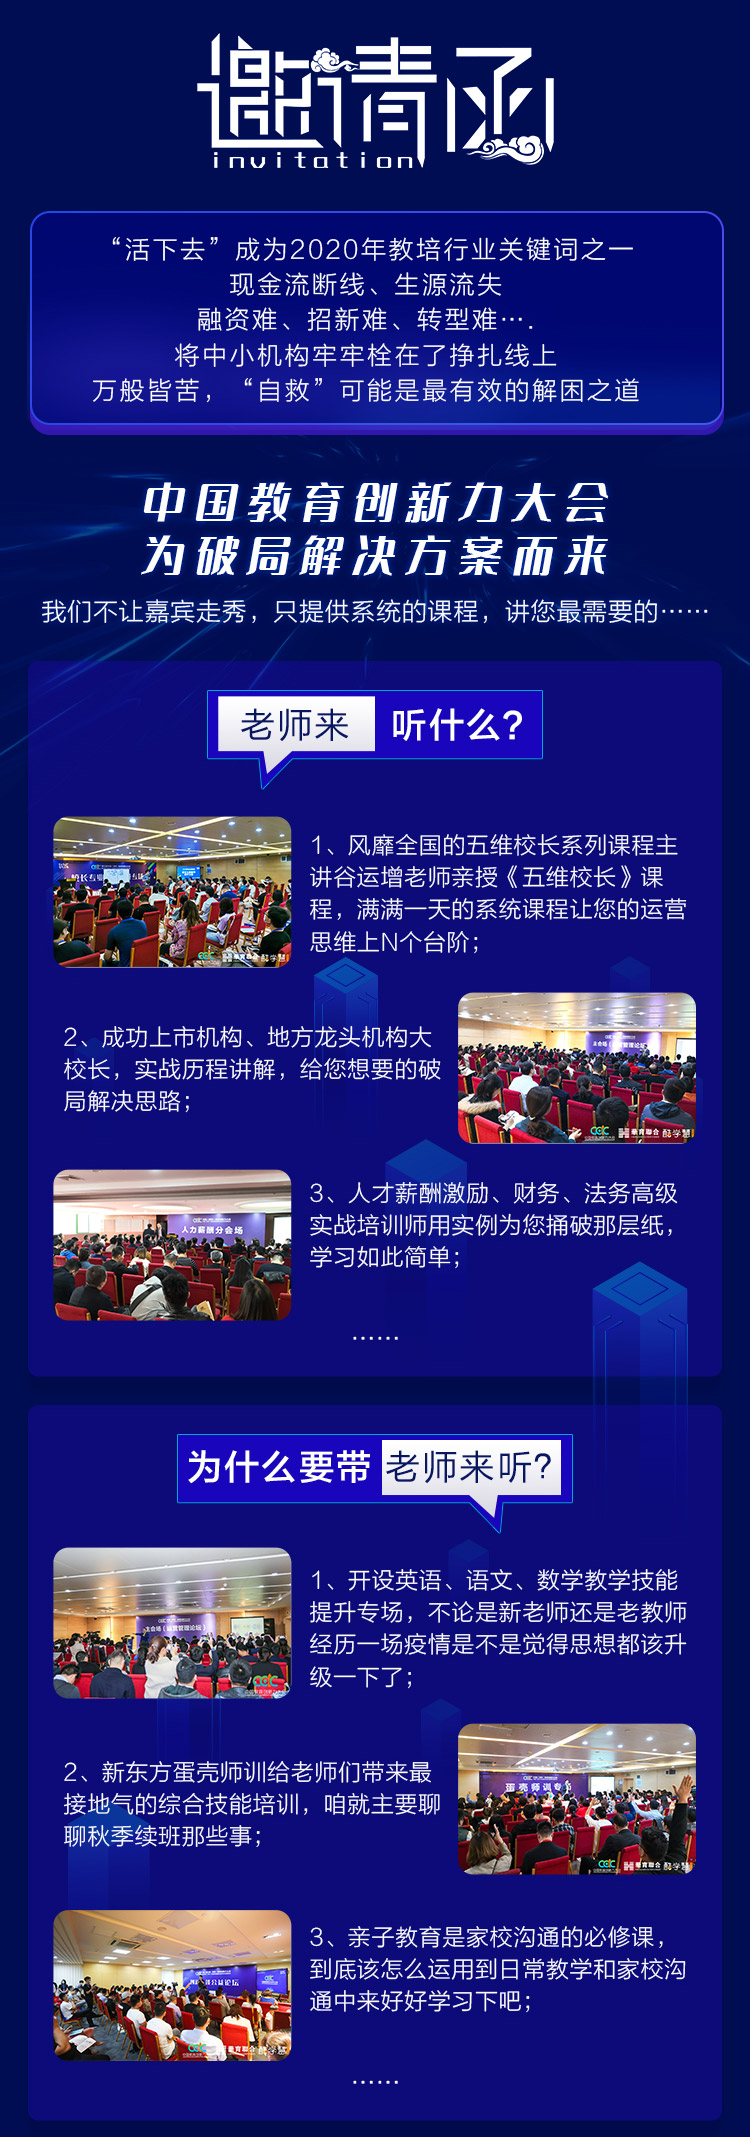 2020濟南中國教育創新力大會